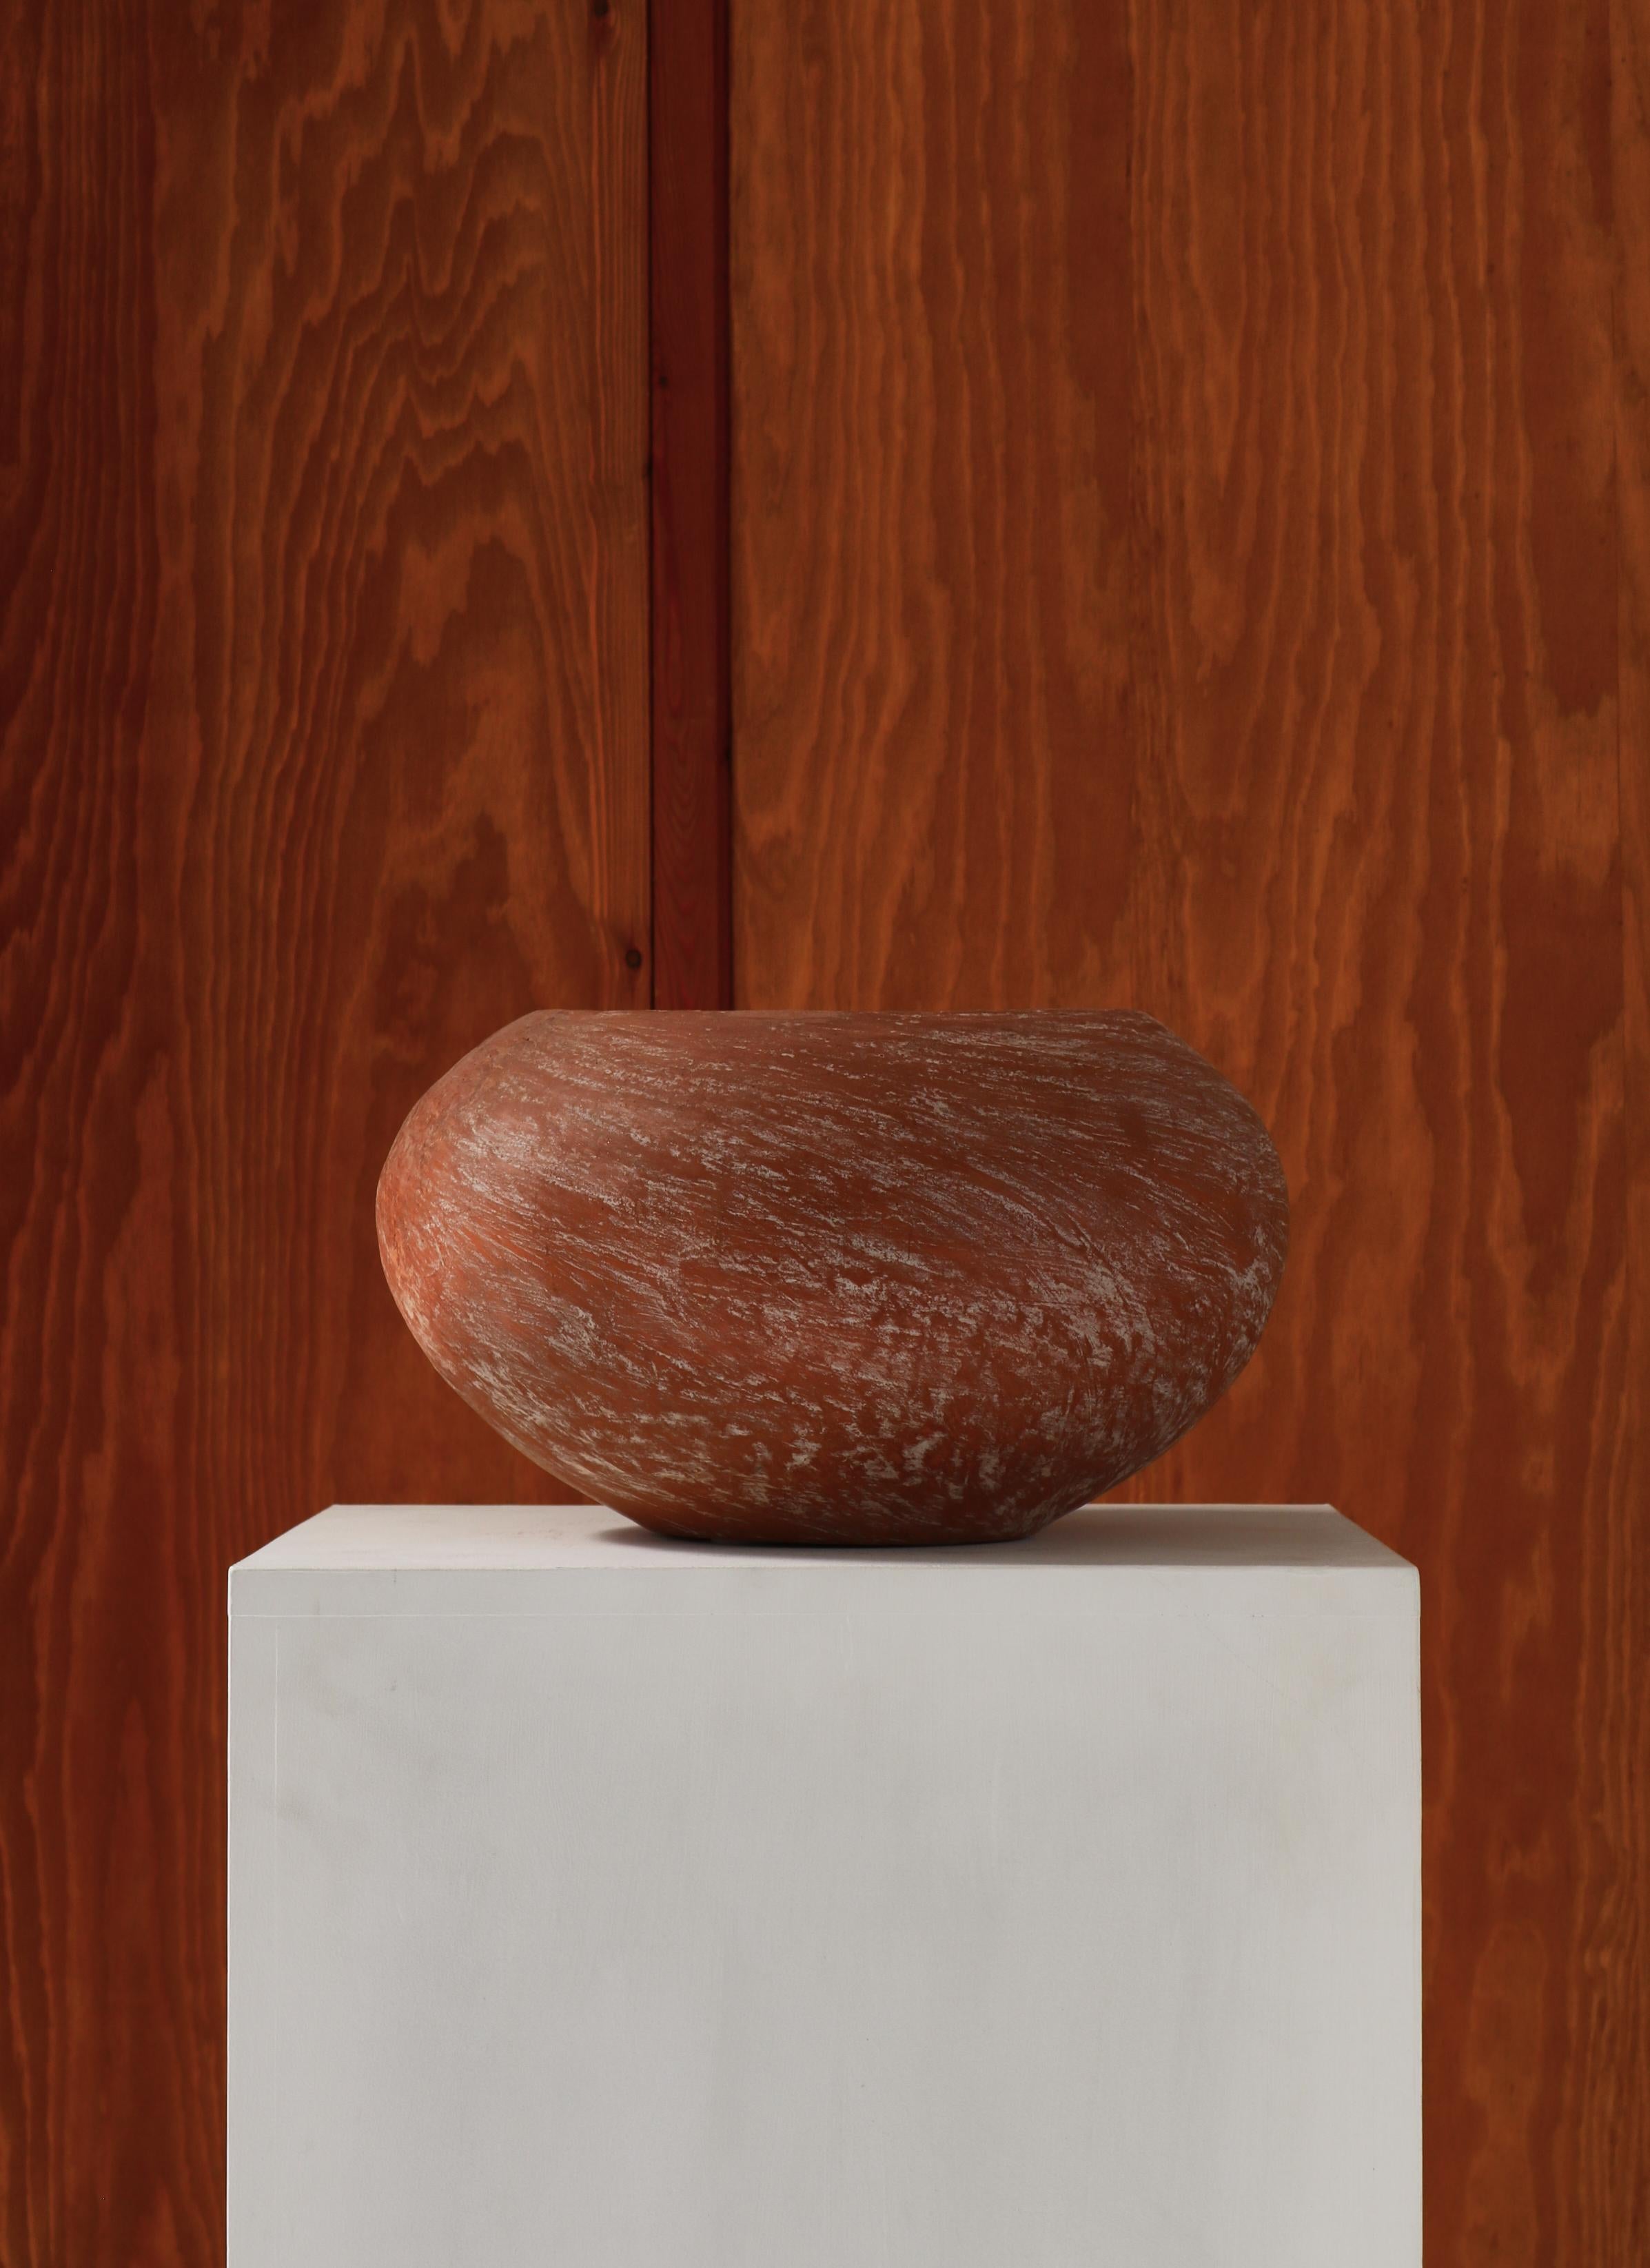 Magnifique et unique bol en terre cuite de l'artiste danois Ole Bjørn Kruger (1922-2007). Le bol est fabriqué en terre chamottée légèrement émaillée qui met en valeur les matériaux naturels d'une manière brute et magnifique. Fabriqué à la main par